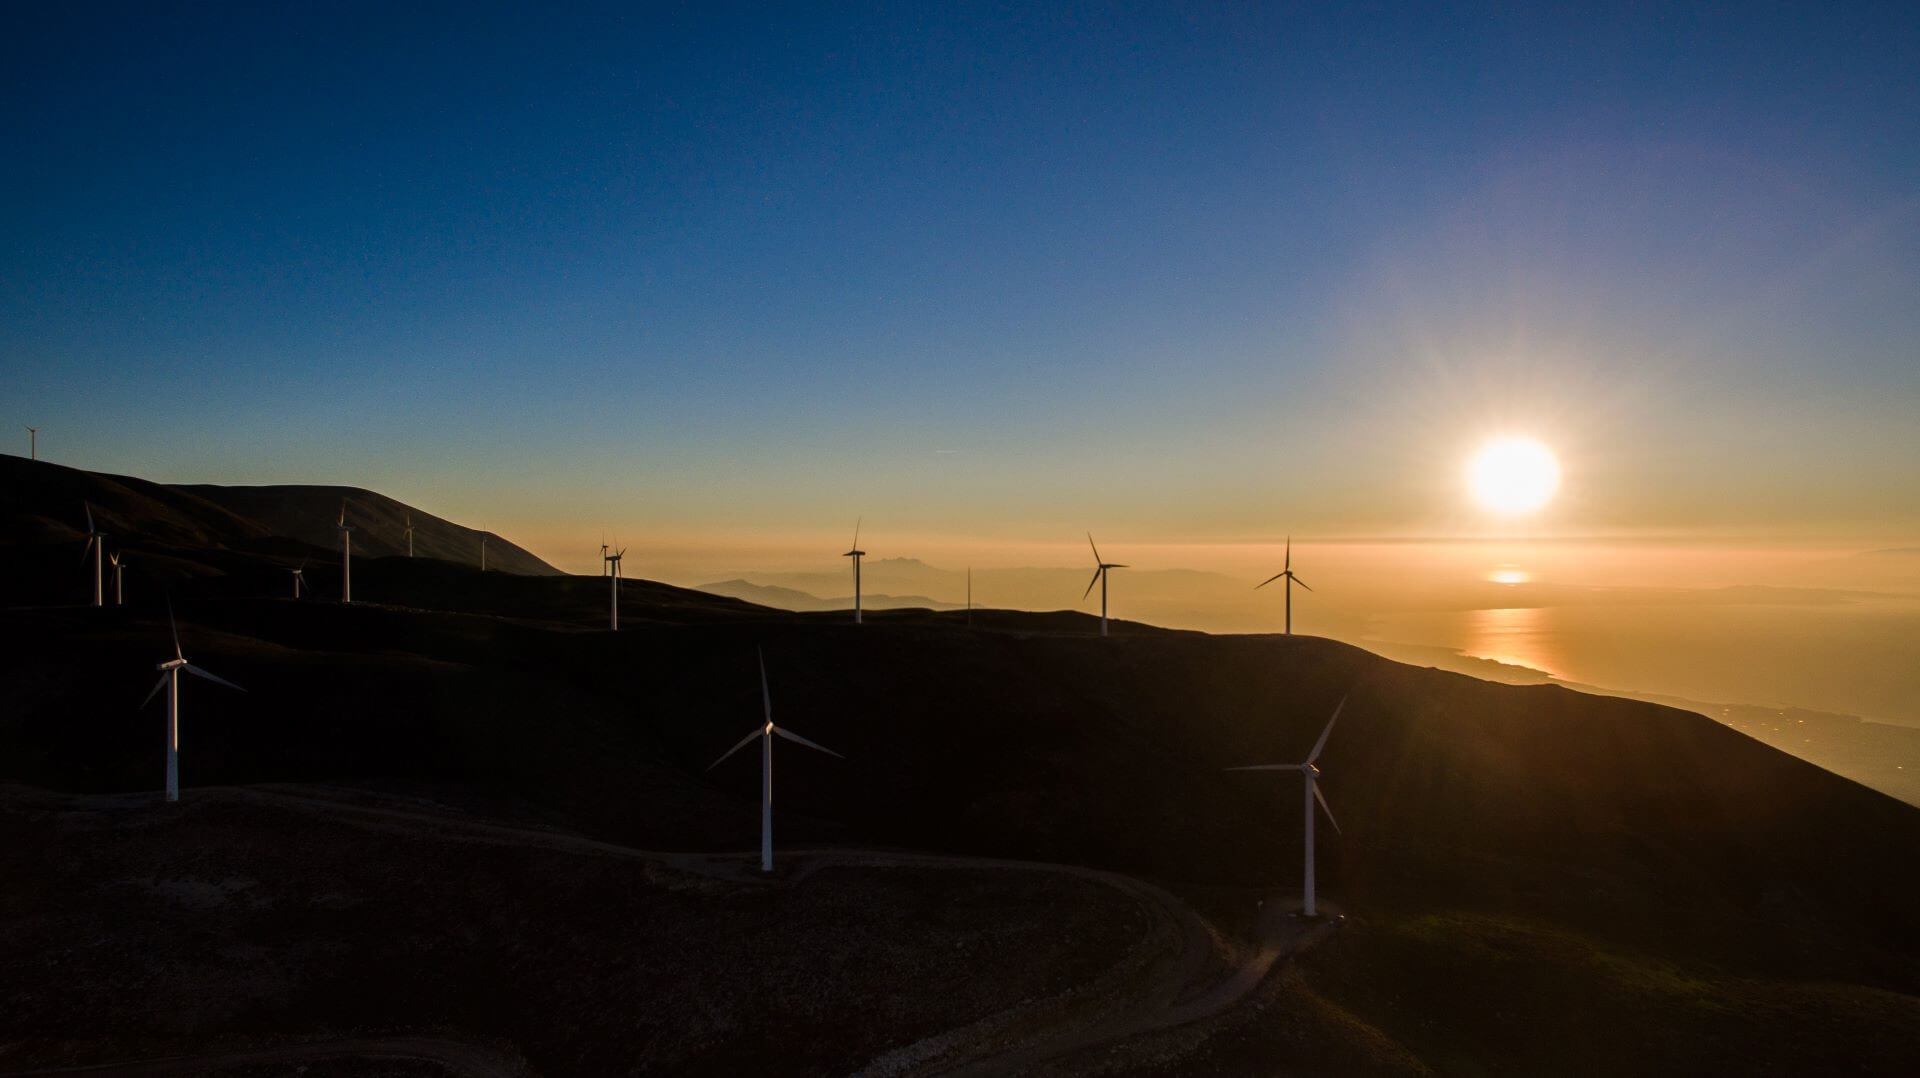 Wind turbines on a mountain near sea at sunset